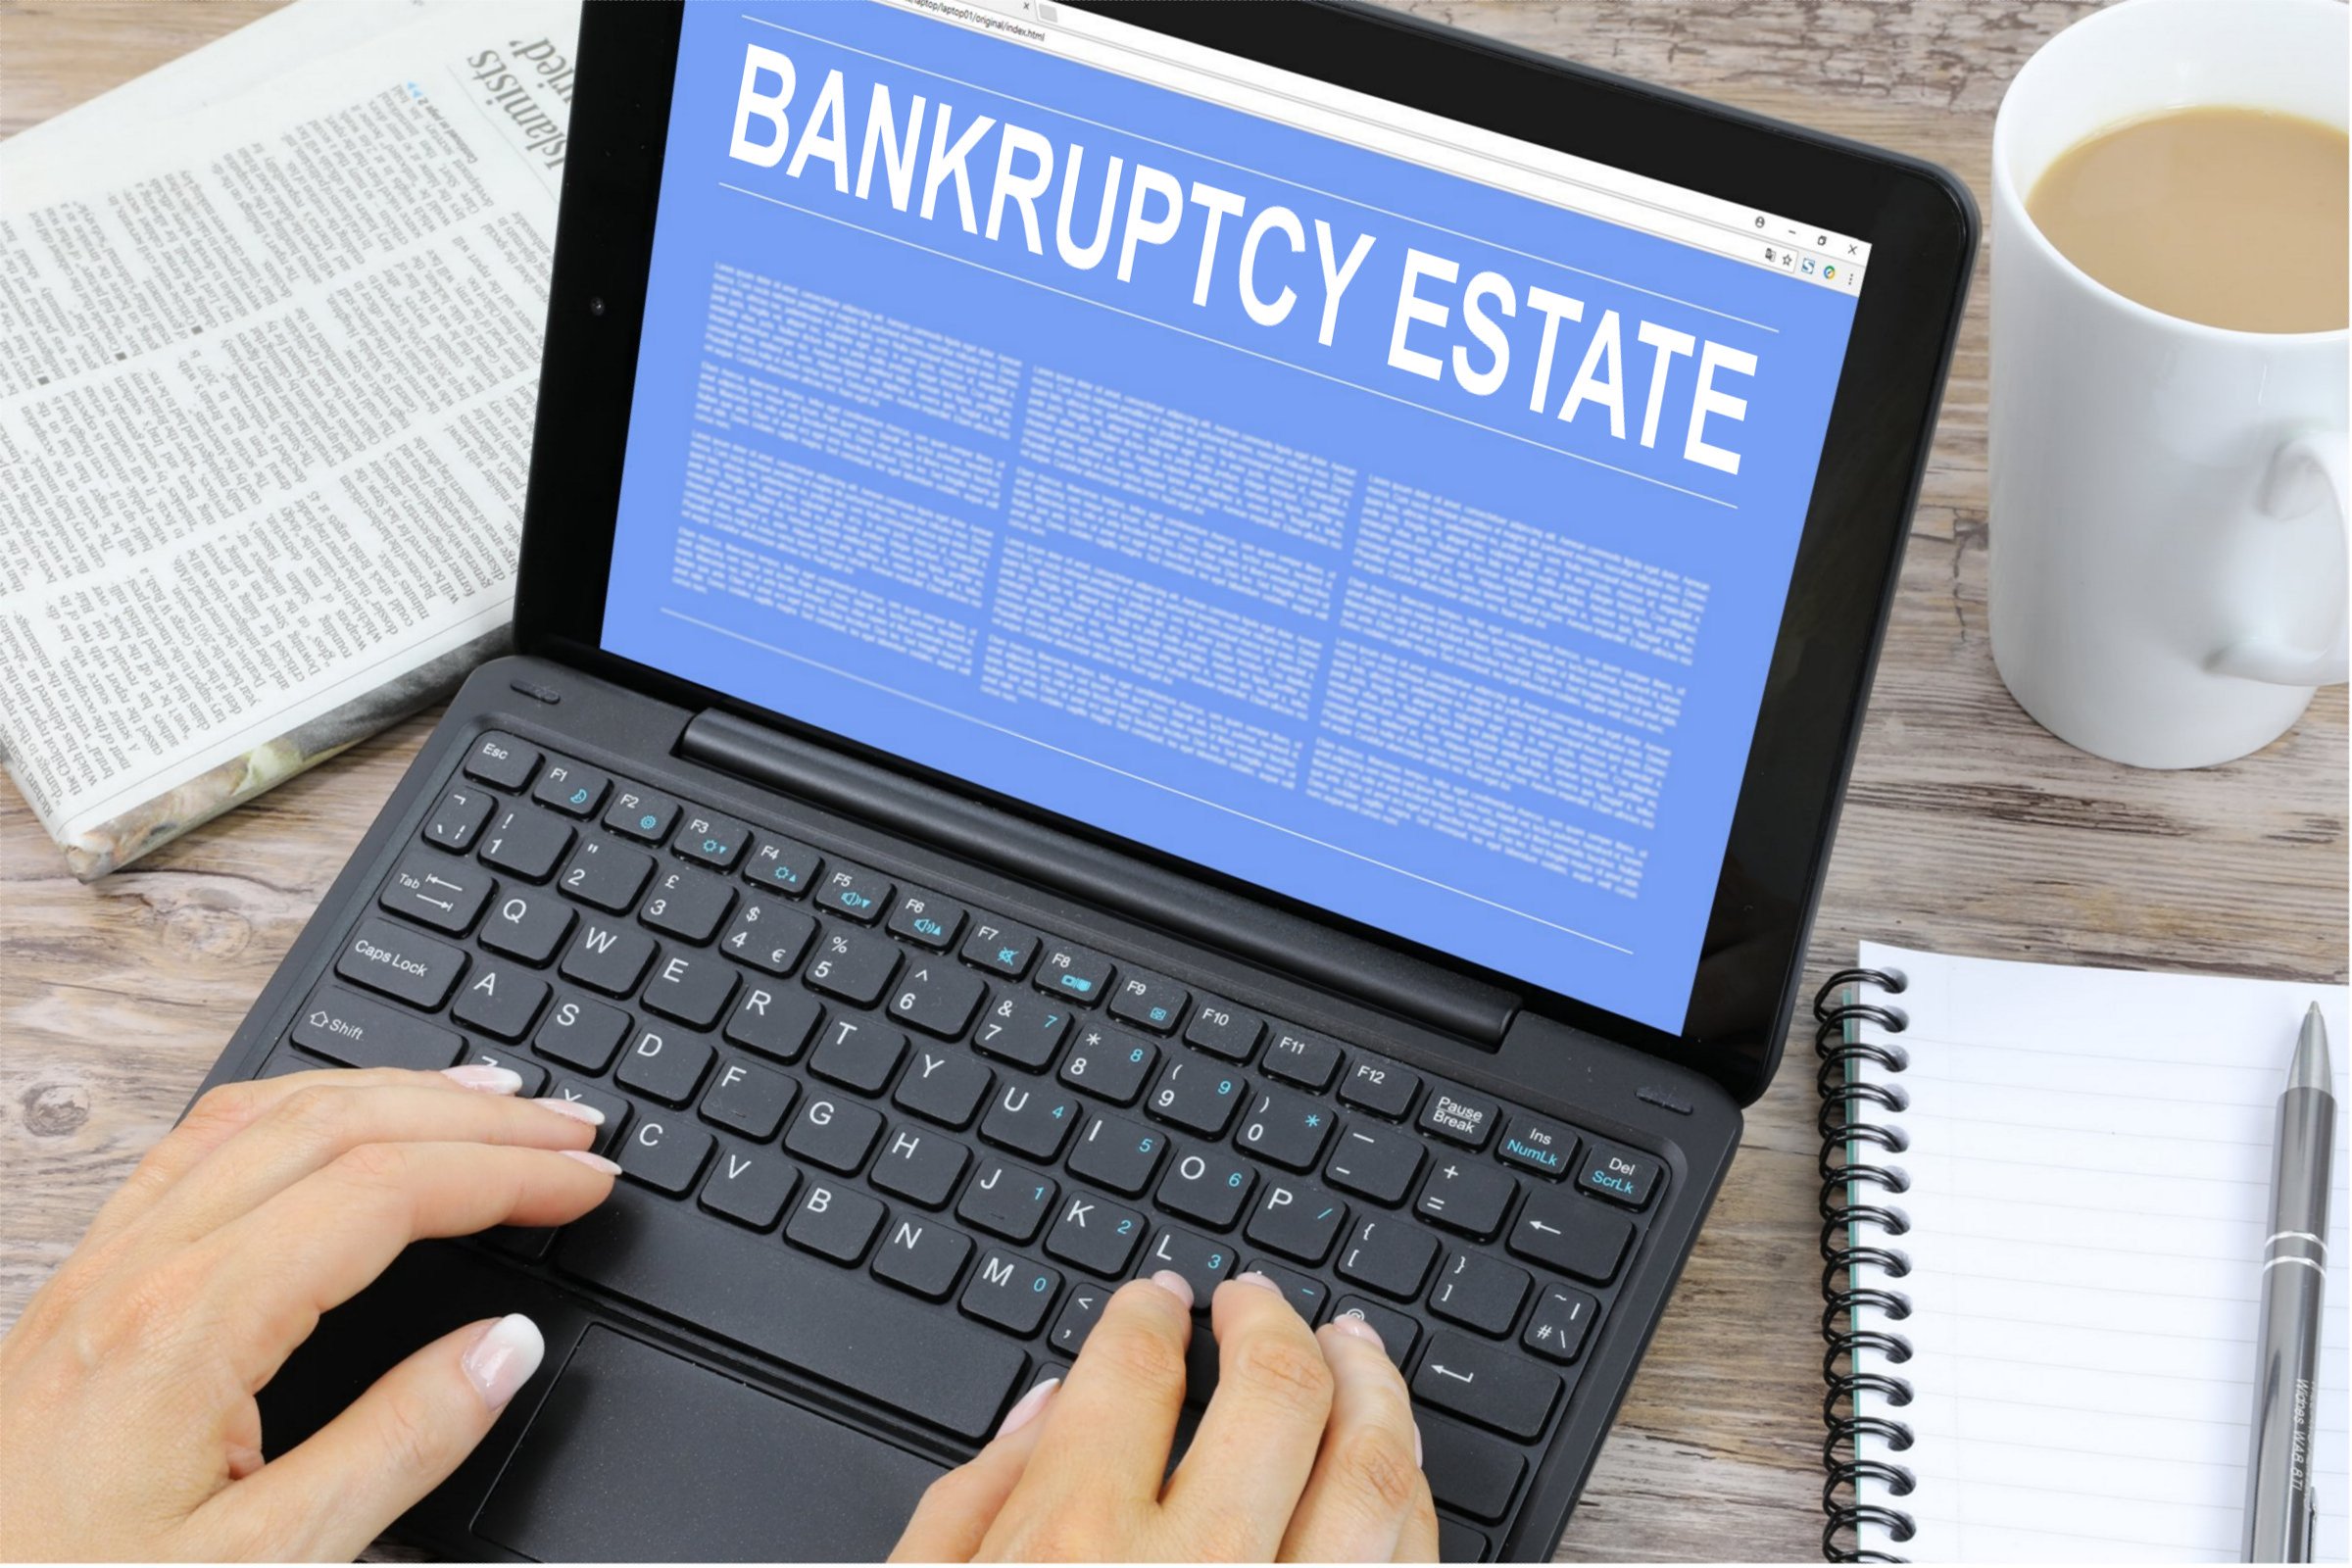 Bankruptcy Estate